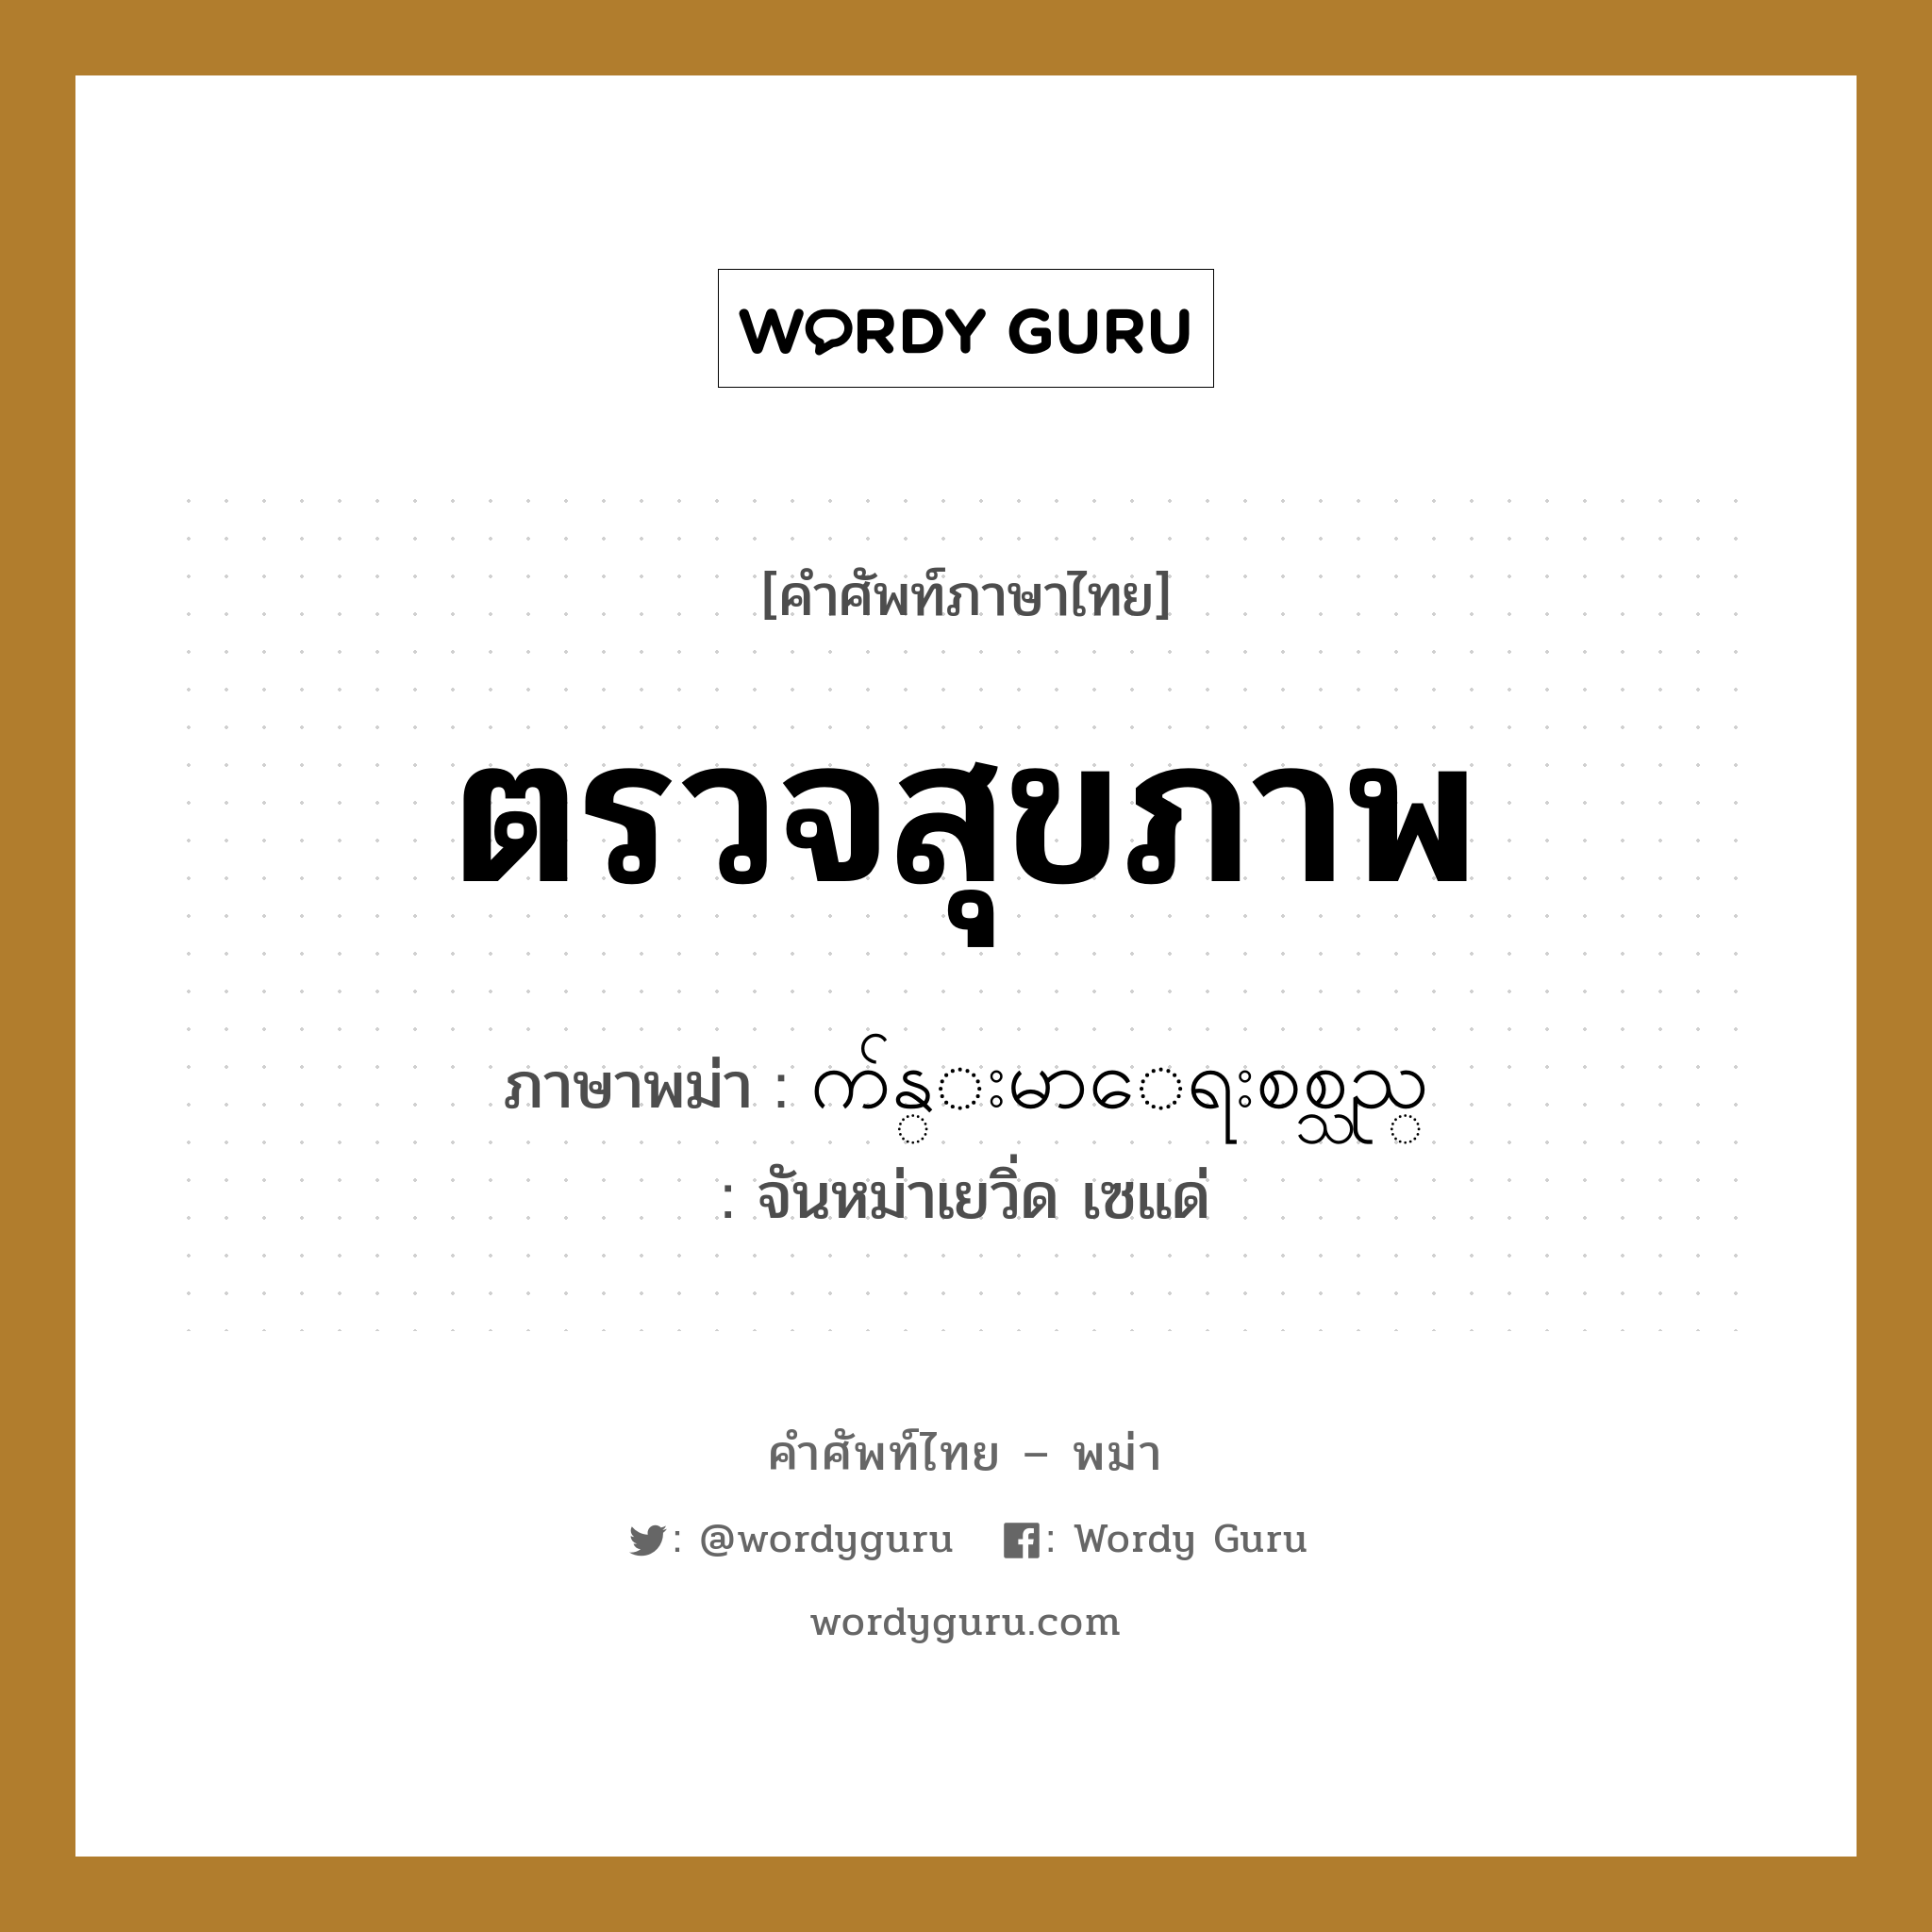 က်န္းမာေရးစစ္သည္ ภาษาไทย?, คำศัพท์ภาษาไทย - พม่า က်န္းမာေရးစစ္သည္ ภาษาพม่า ตรวจสุขภาพ หมวด หมวดโรคและยารักษา จันหม่าเยวิ่ด เซแด่ หมวด หมวดโรคและยารักษา